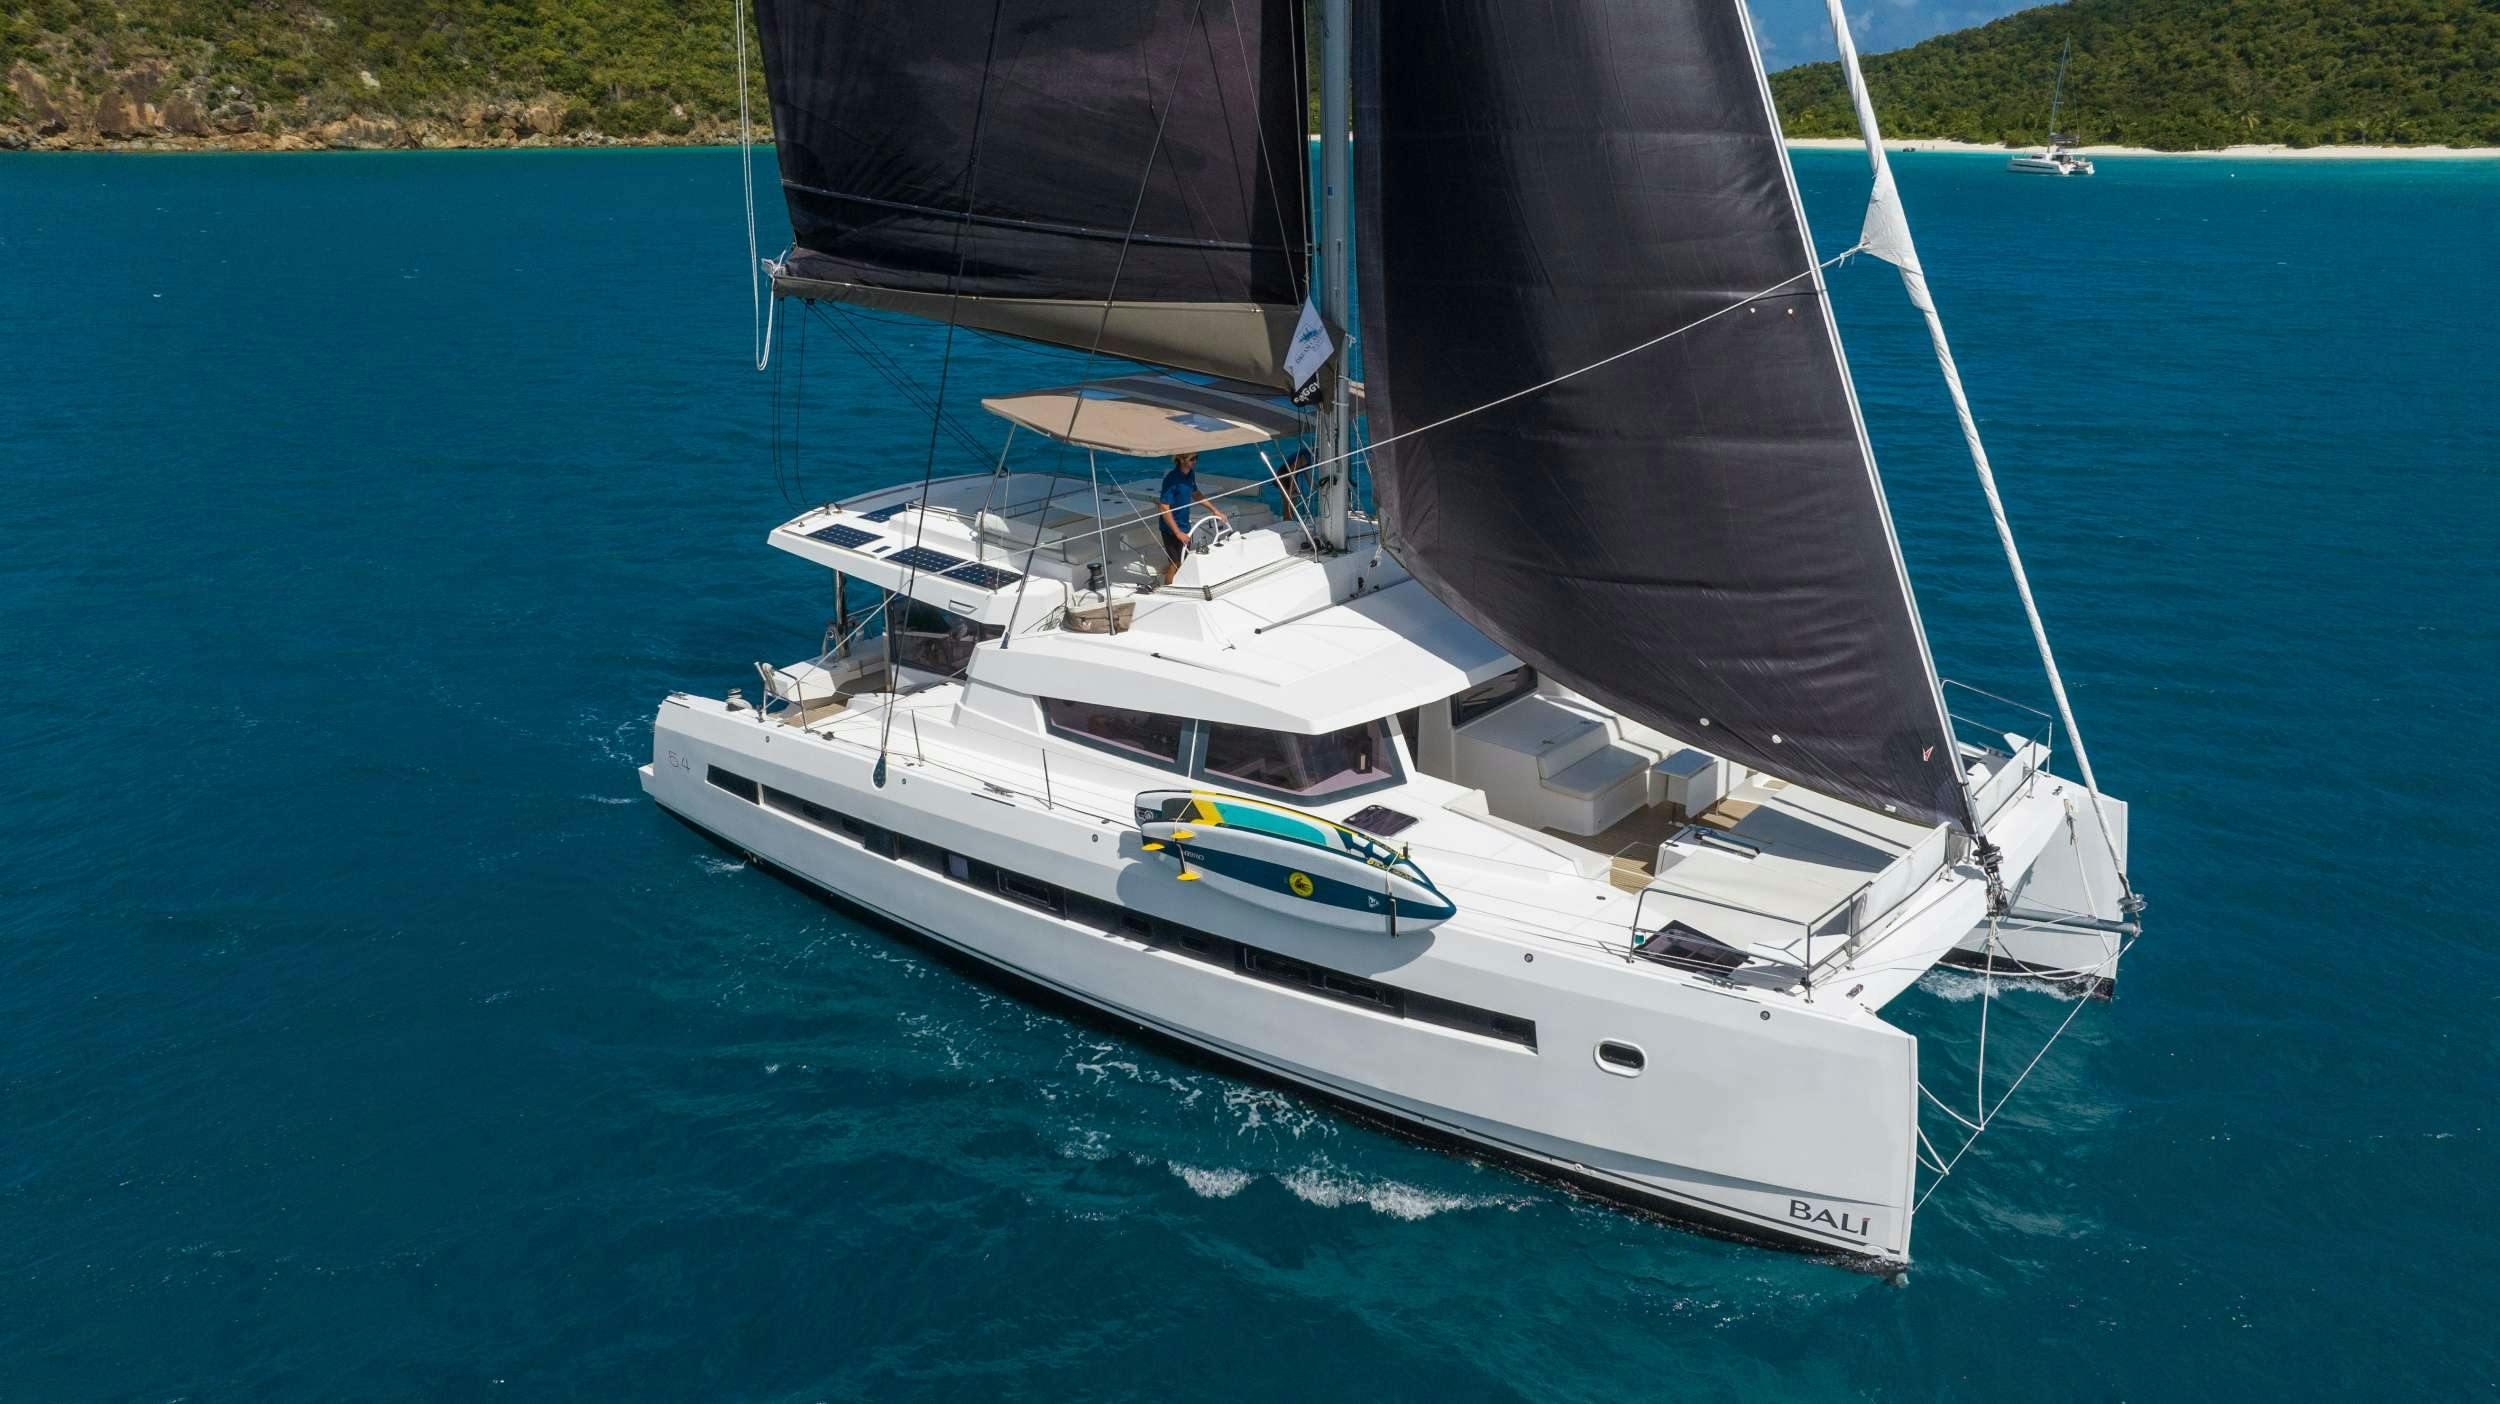 SUN DAZE 5.4 - Catamaran Charter British Virgin Islands & Boat hire in Caribbean 1